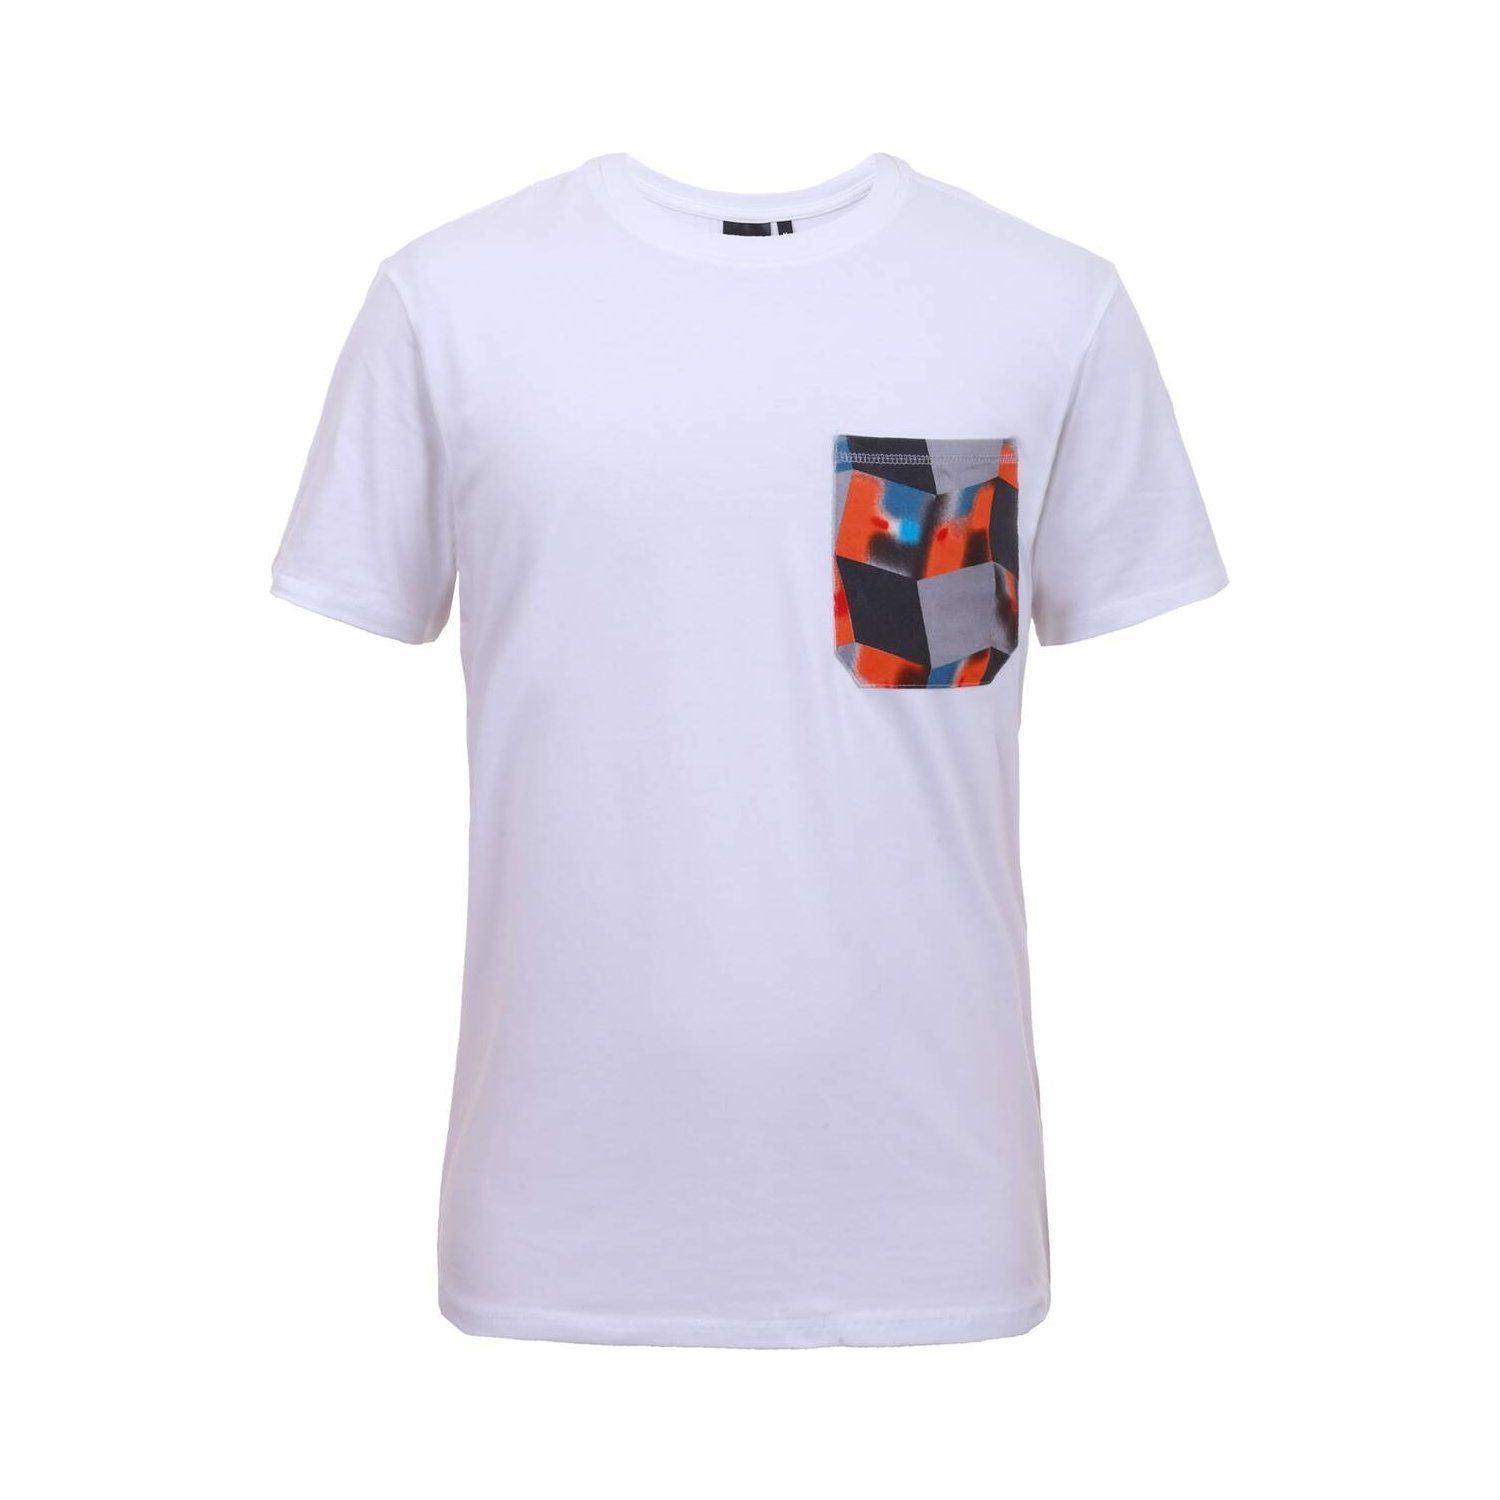 Icepeak T-Shirt Herren - / S WEISS 980 T-Shirt